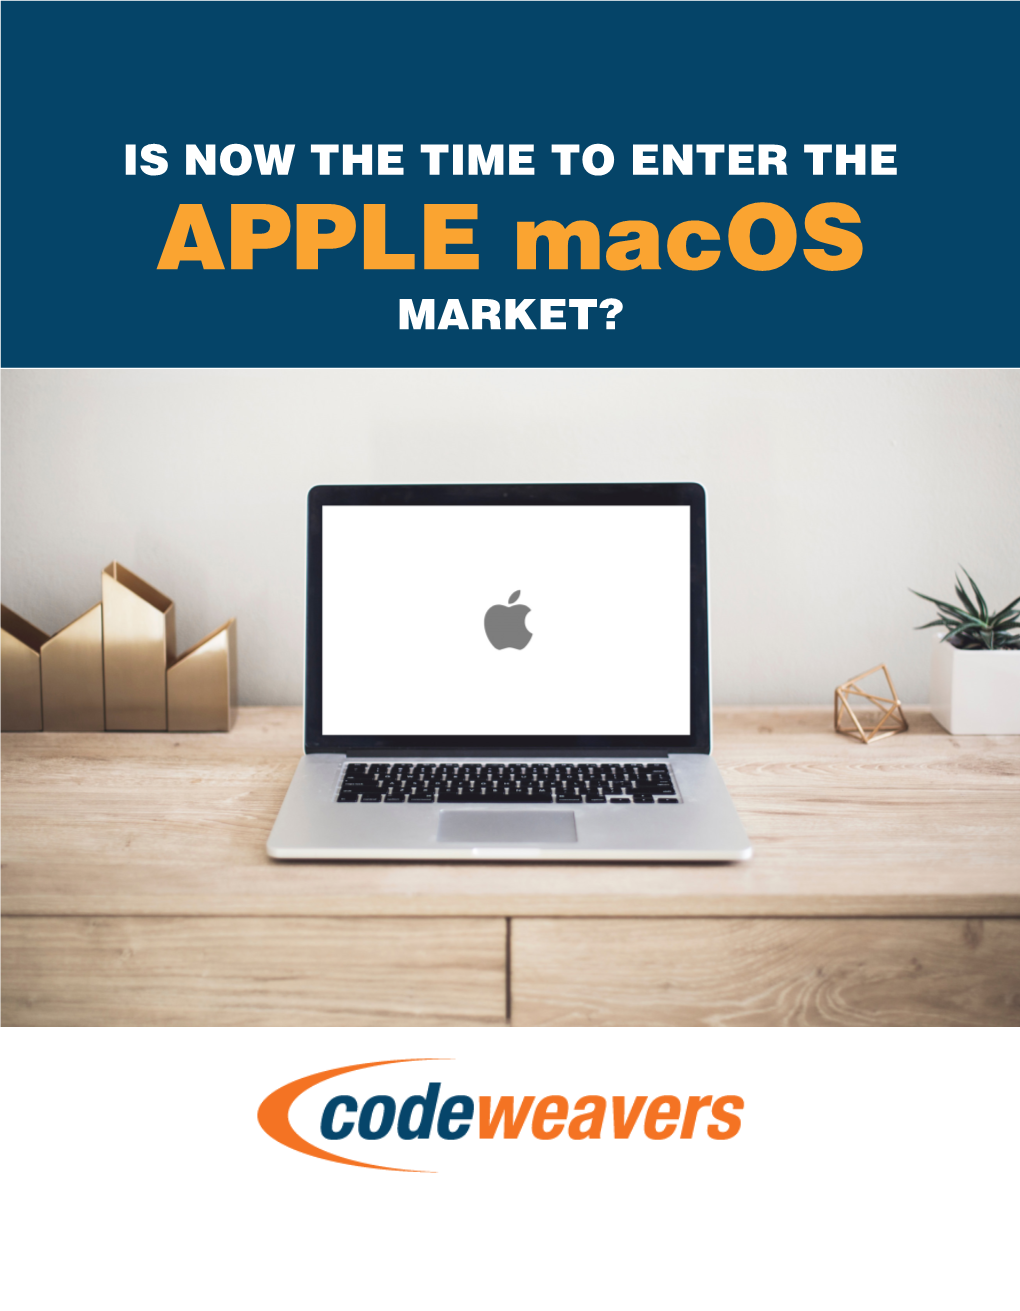 APPLE Macos MARKET? © 2017 Codeweavers